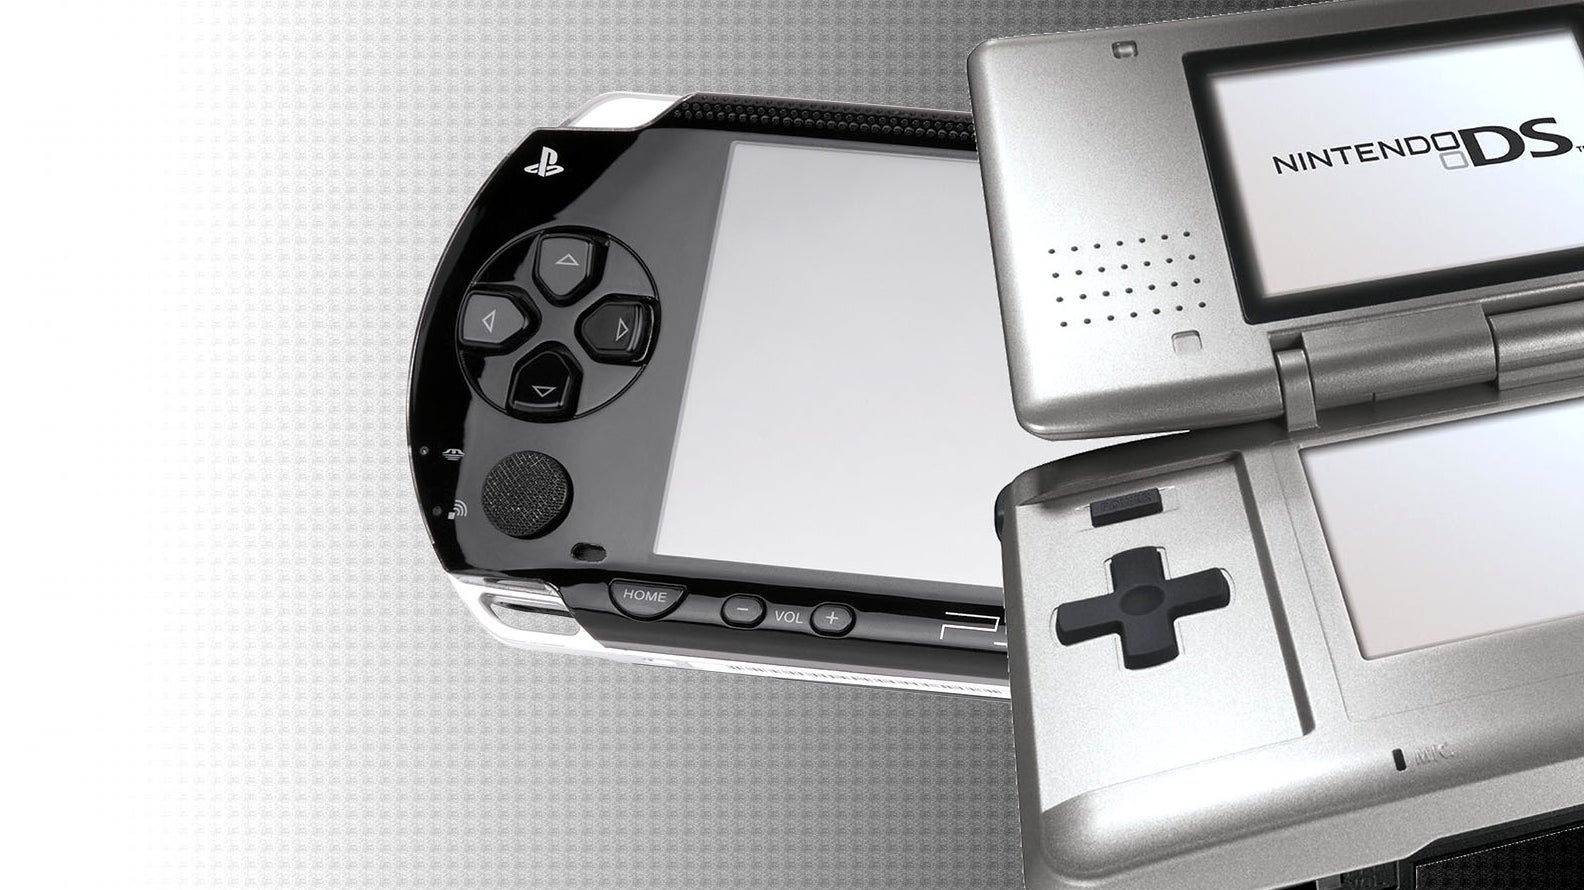 DF Retro: Revisiting E3 2004 - PlayStation Portable vs Nintendo DS